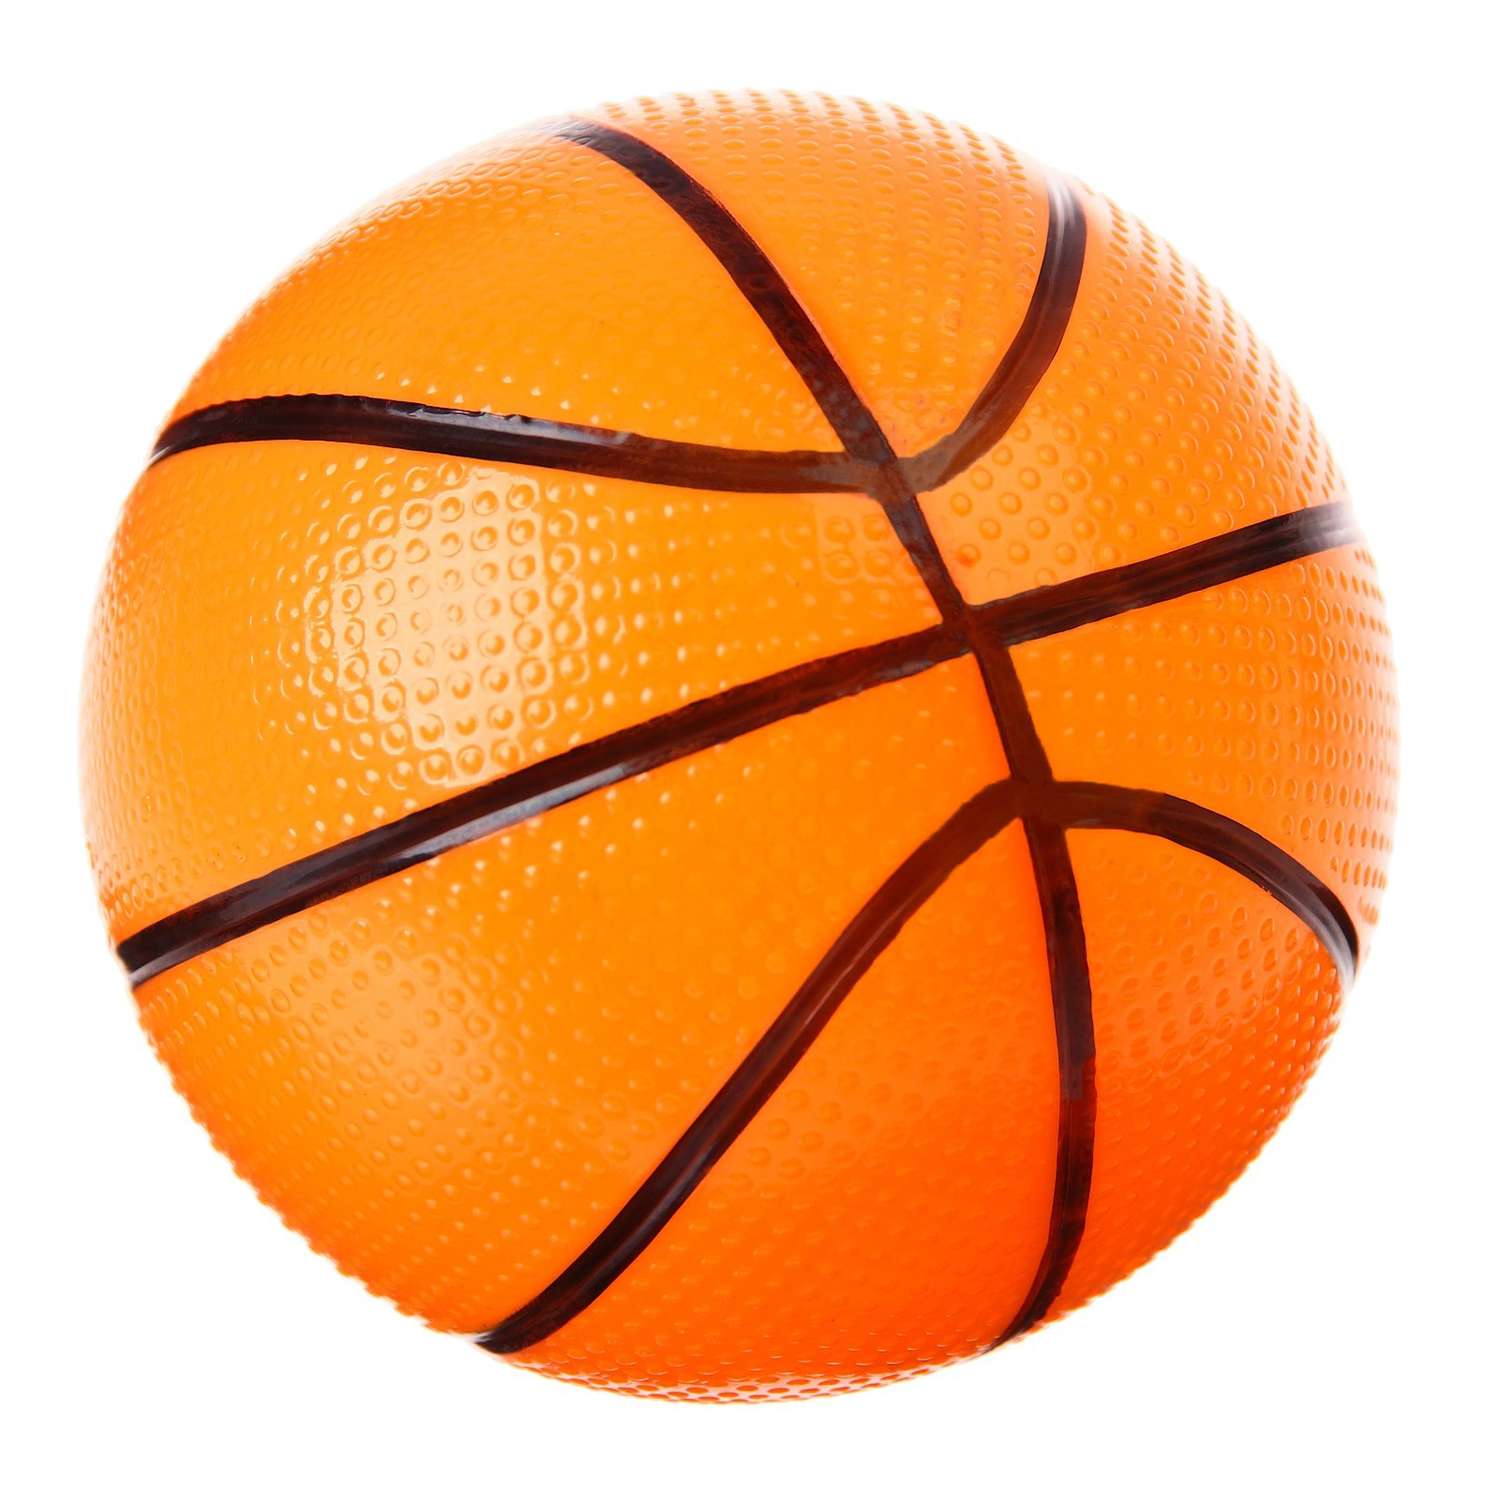 Баскетбольный набор Hasbro с мячом «Трансформеры» диаметр мяча 8 см диаметр кольца 13.5 см - фото 4